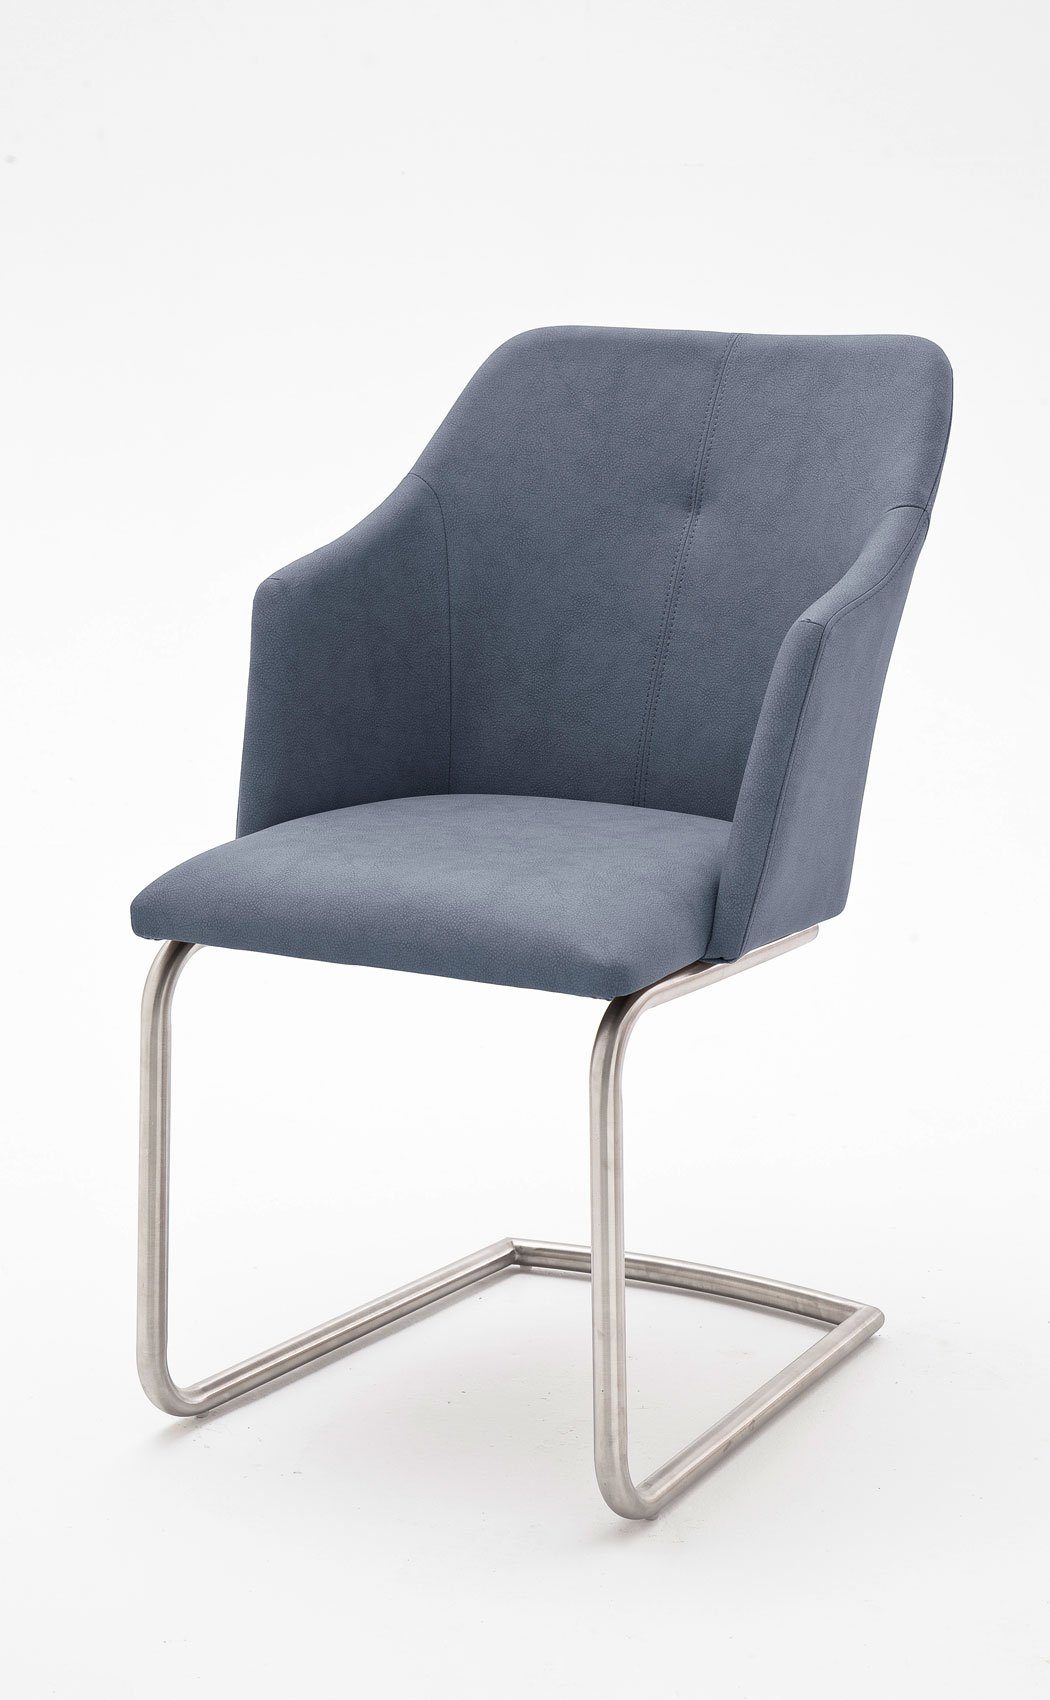 9-St), + Stuhl 151, B3 6x montiert Eiche expendio bianco Kunstleder graublau Wohnzimmer-Set LED (Spar-Set, Torrent